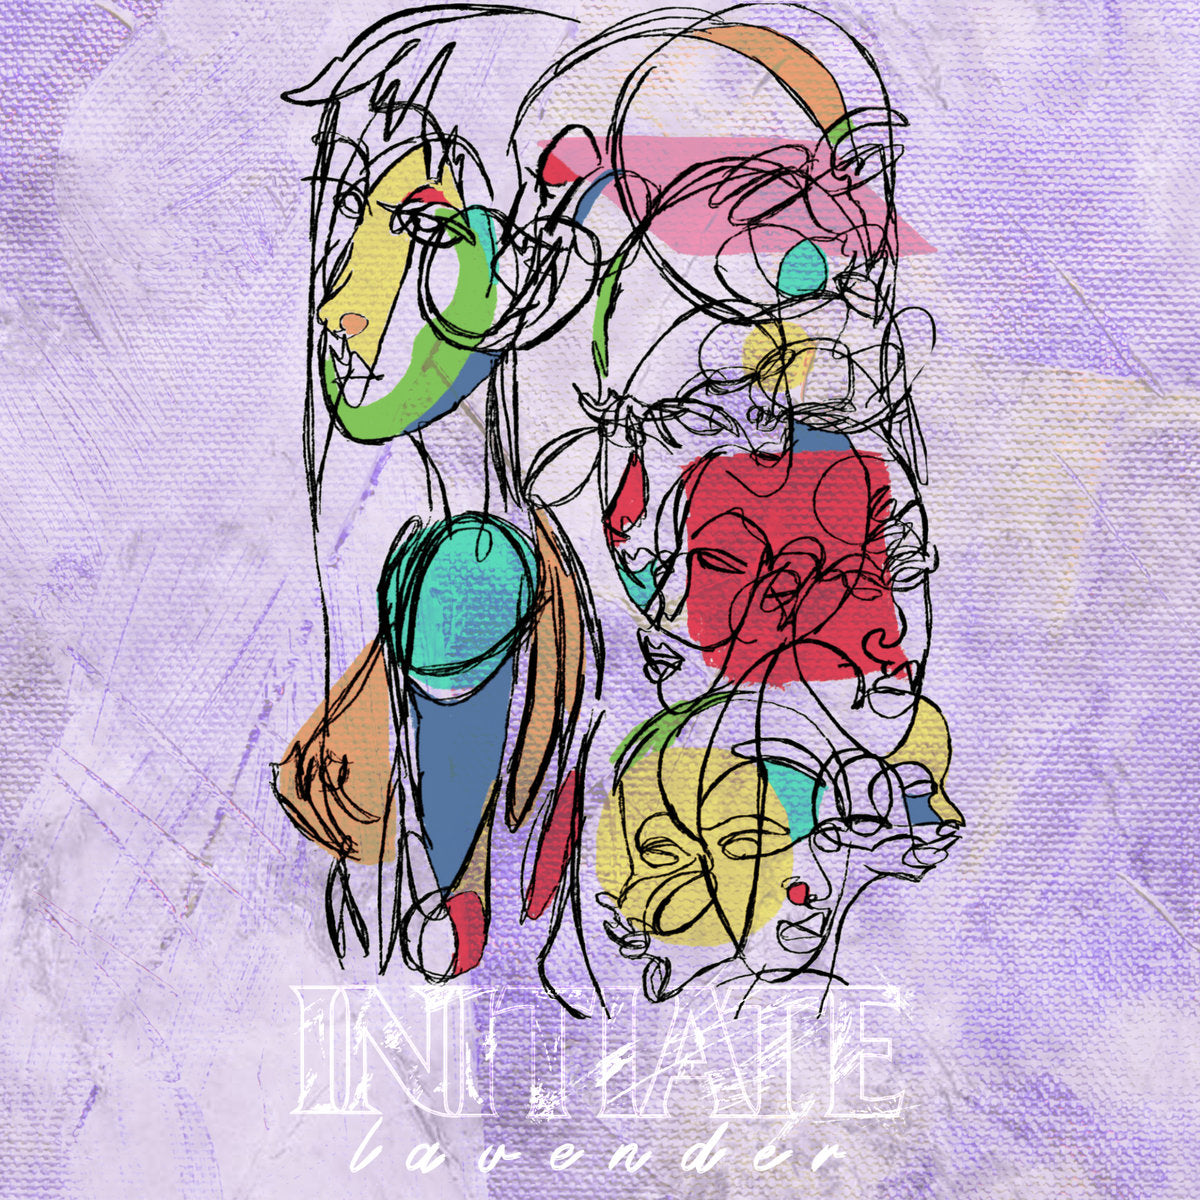 INITIATE 'Lavender' 12" EP / COLORED EDITION